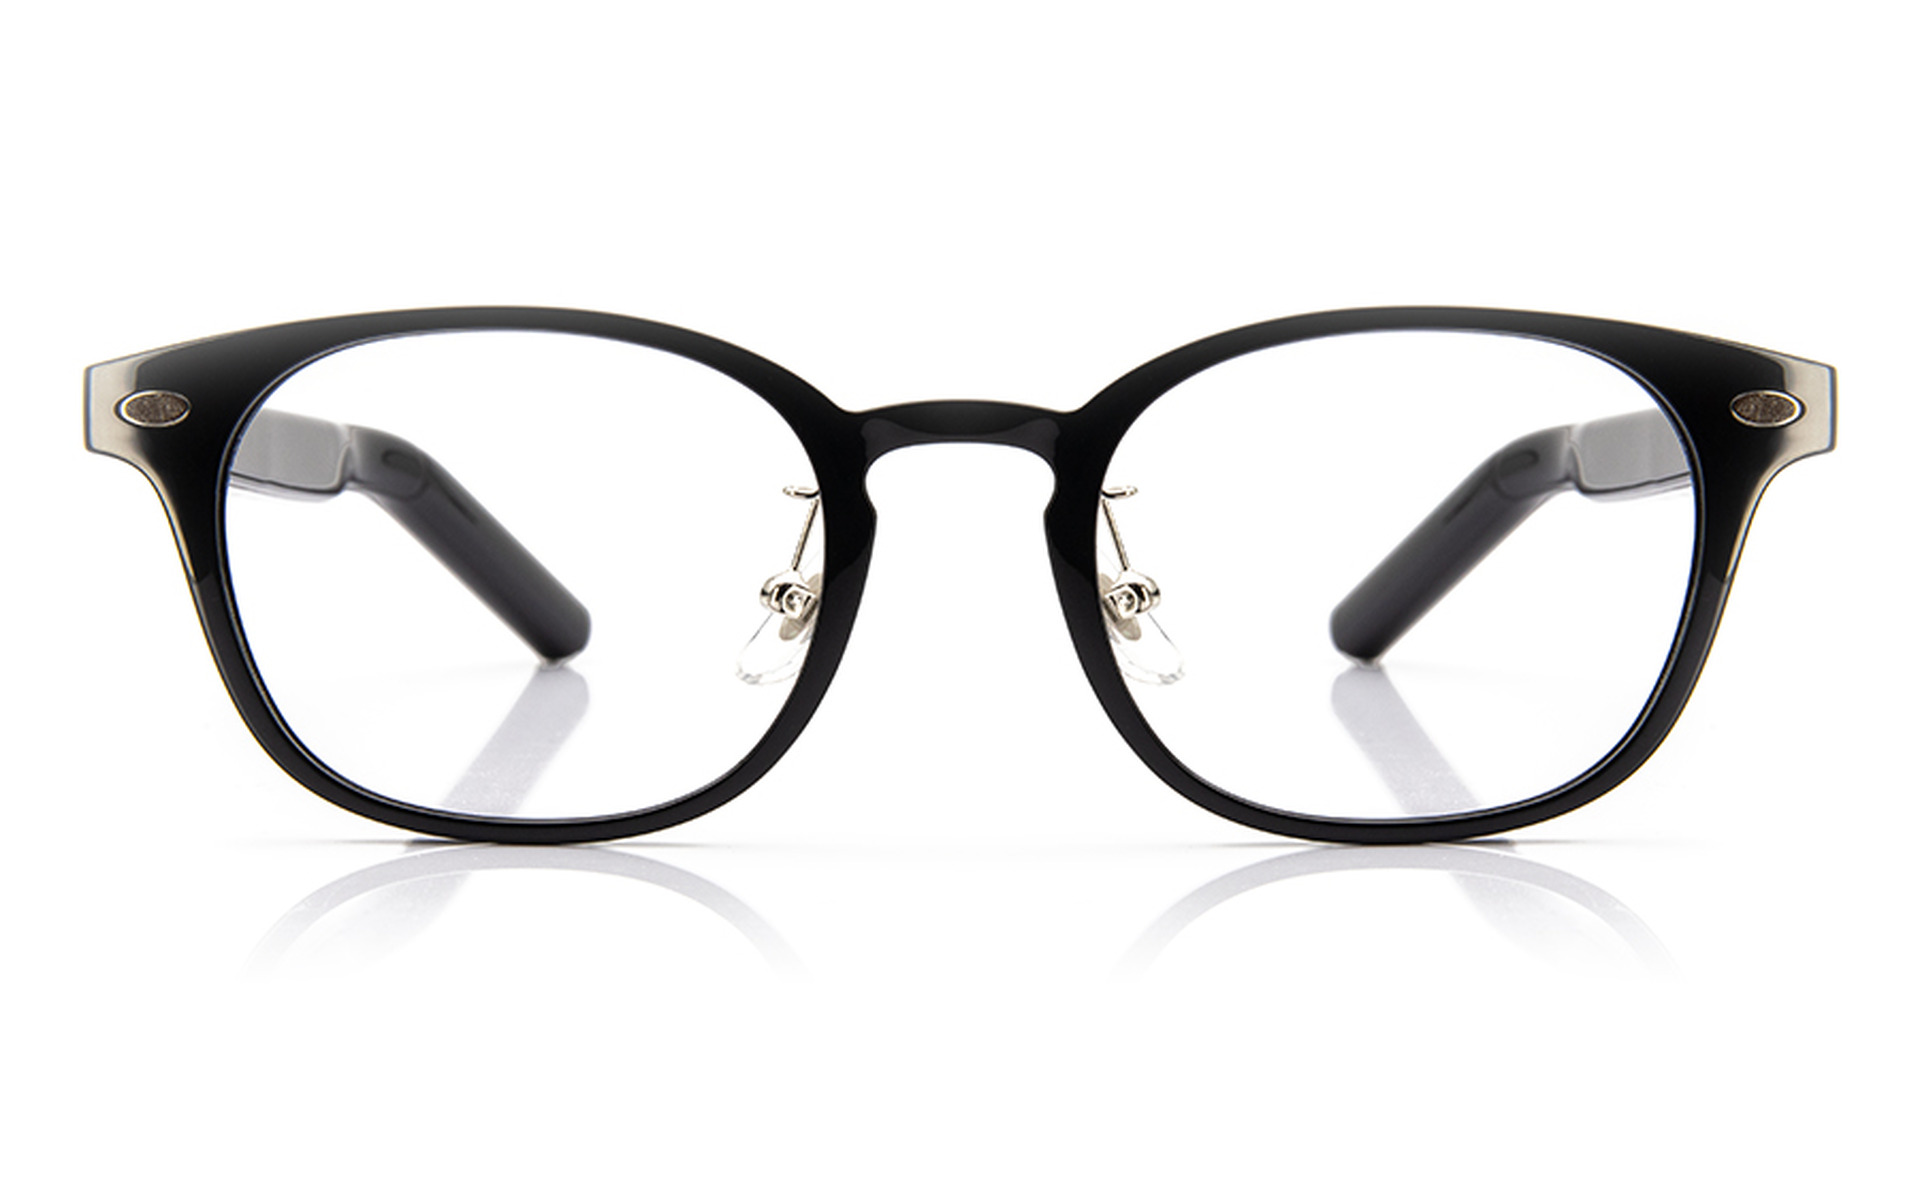 聴こえるメガネ HUAWEI Eyewear 2、OWNDAYSモデル発売。4スタイルx2色 